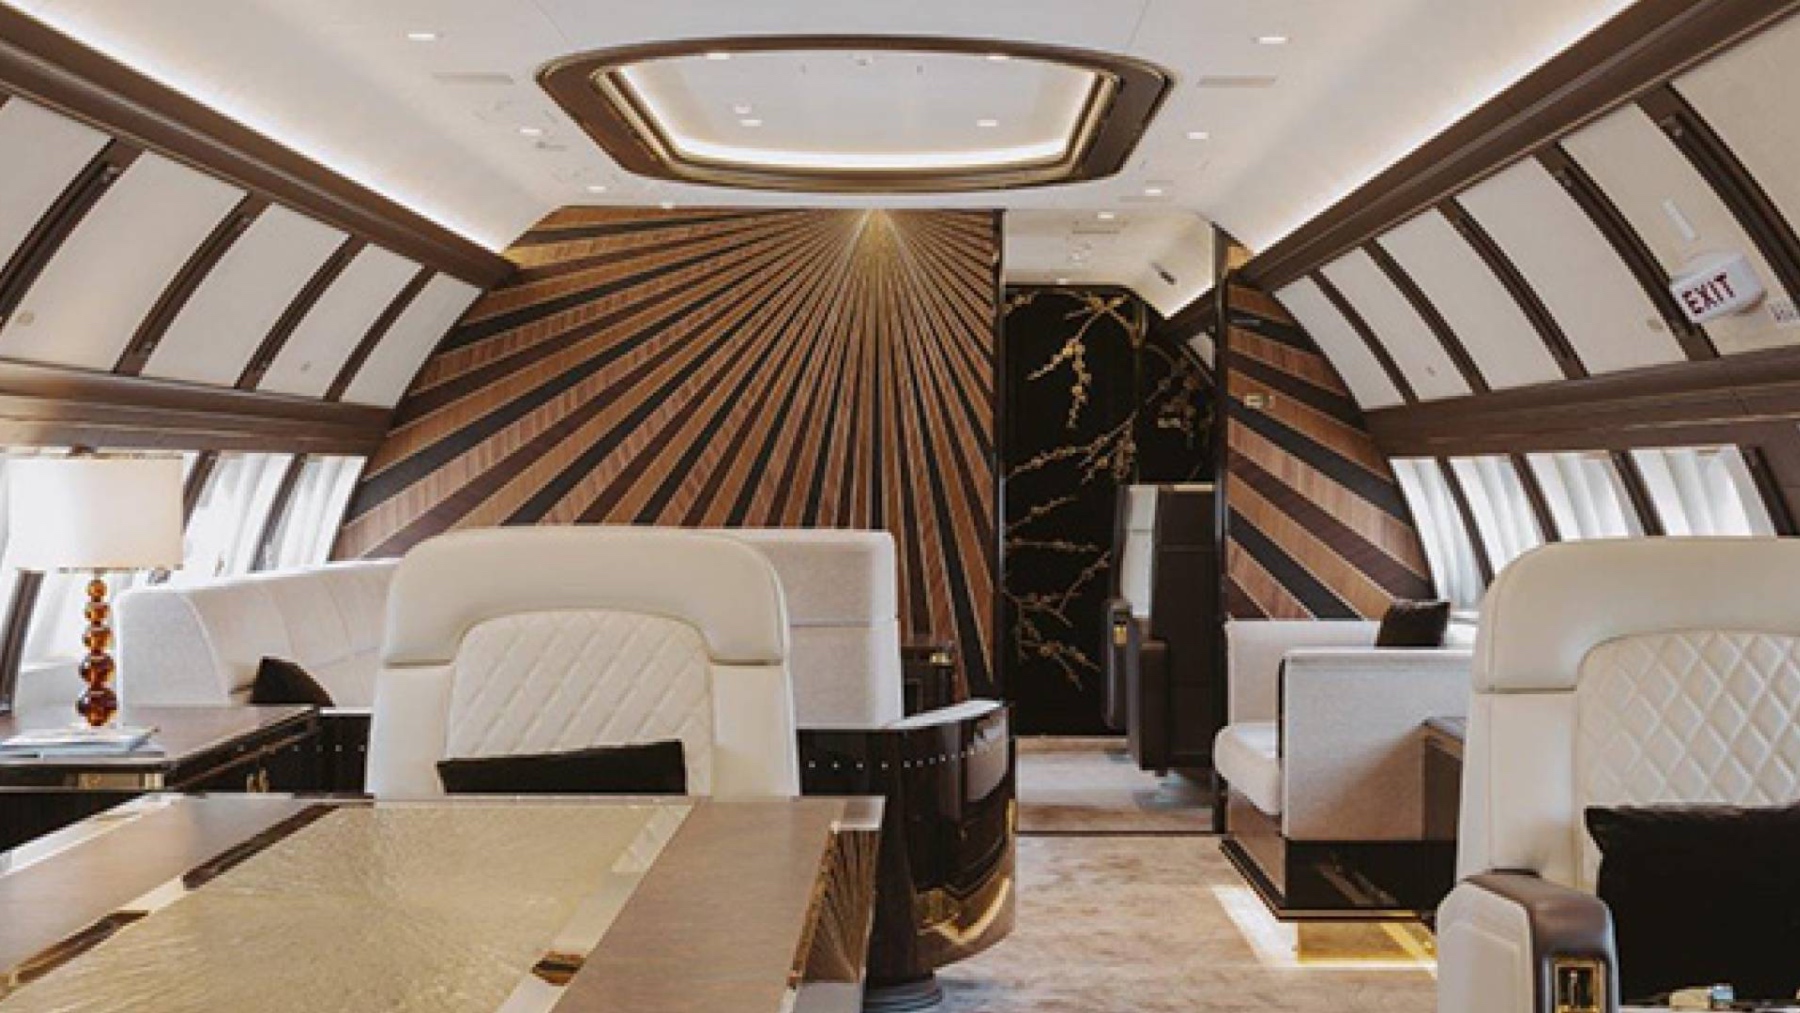 El jet privado con el que viajar a los años 20 gracias a su interior Art Déco